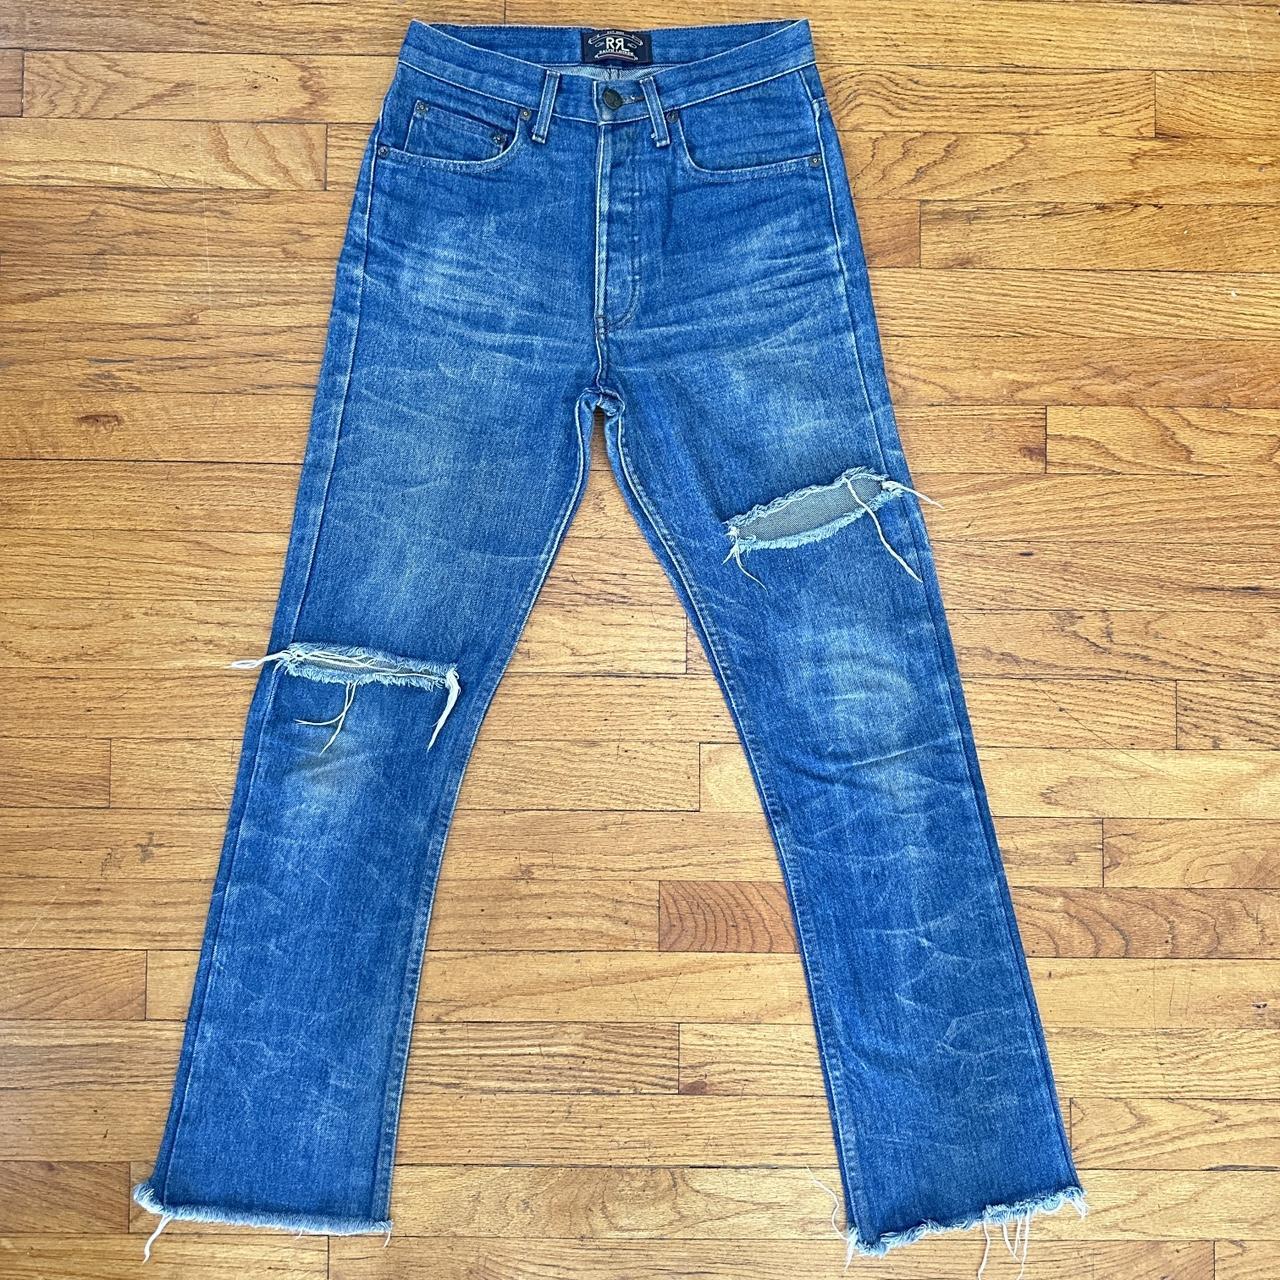 rrl by ralph lauren men’s jeans size 29 unfinished... - Depop